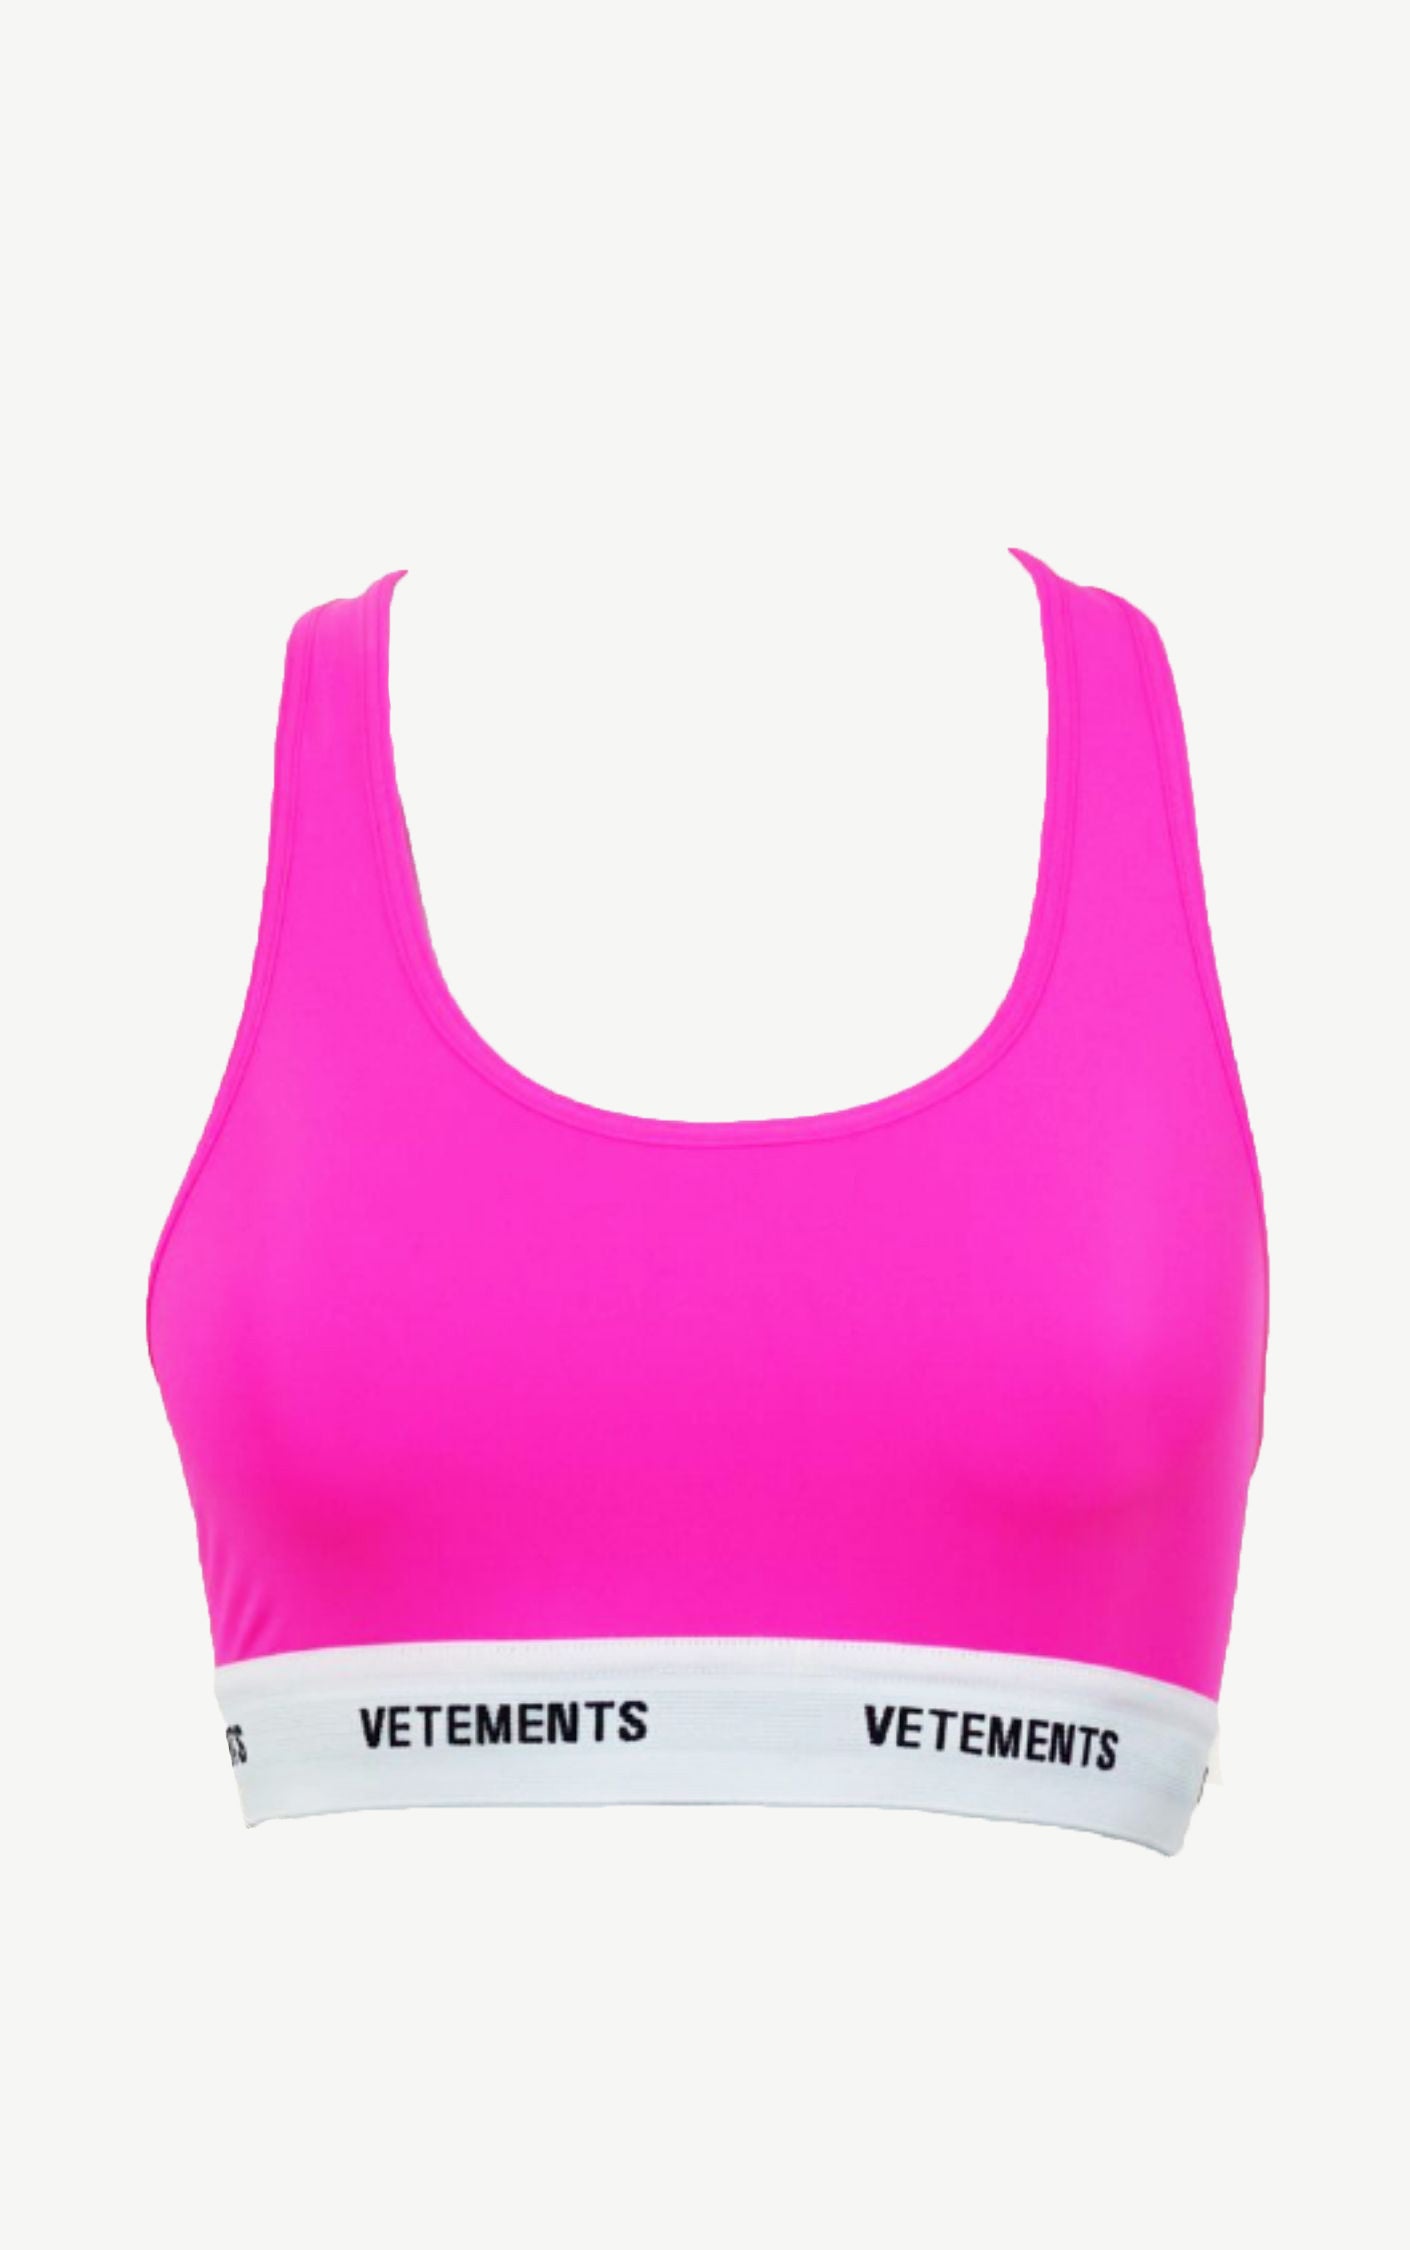 VETEMENTS Neon Hot Pink Sport Top